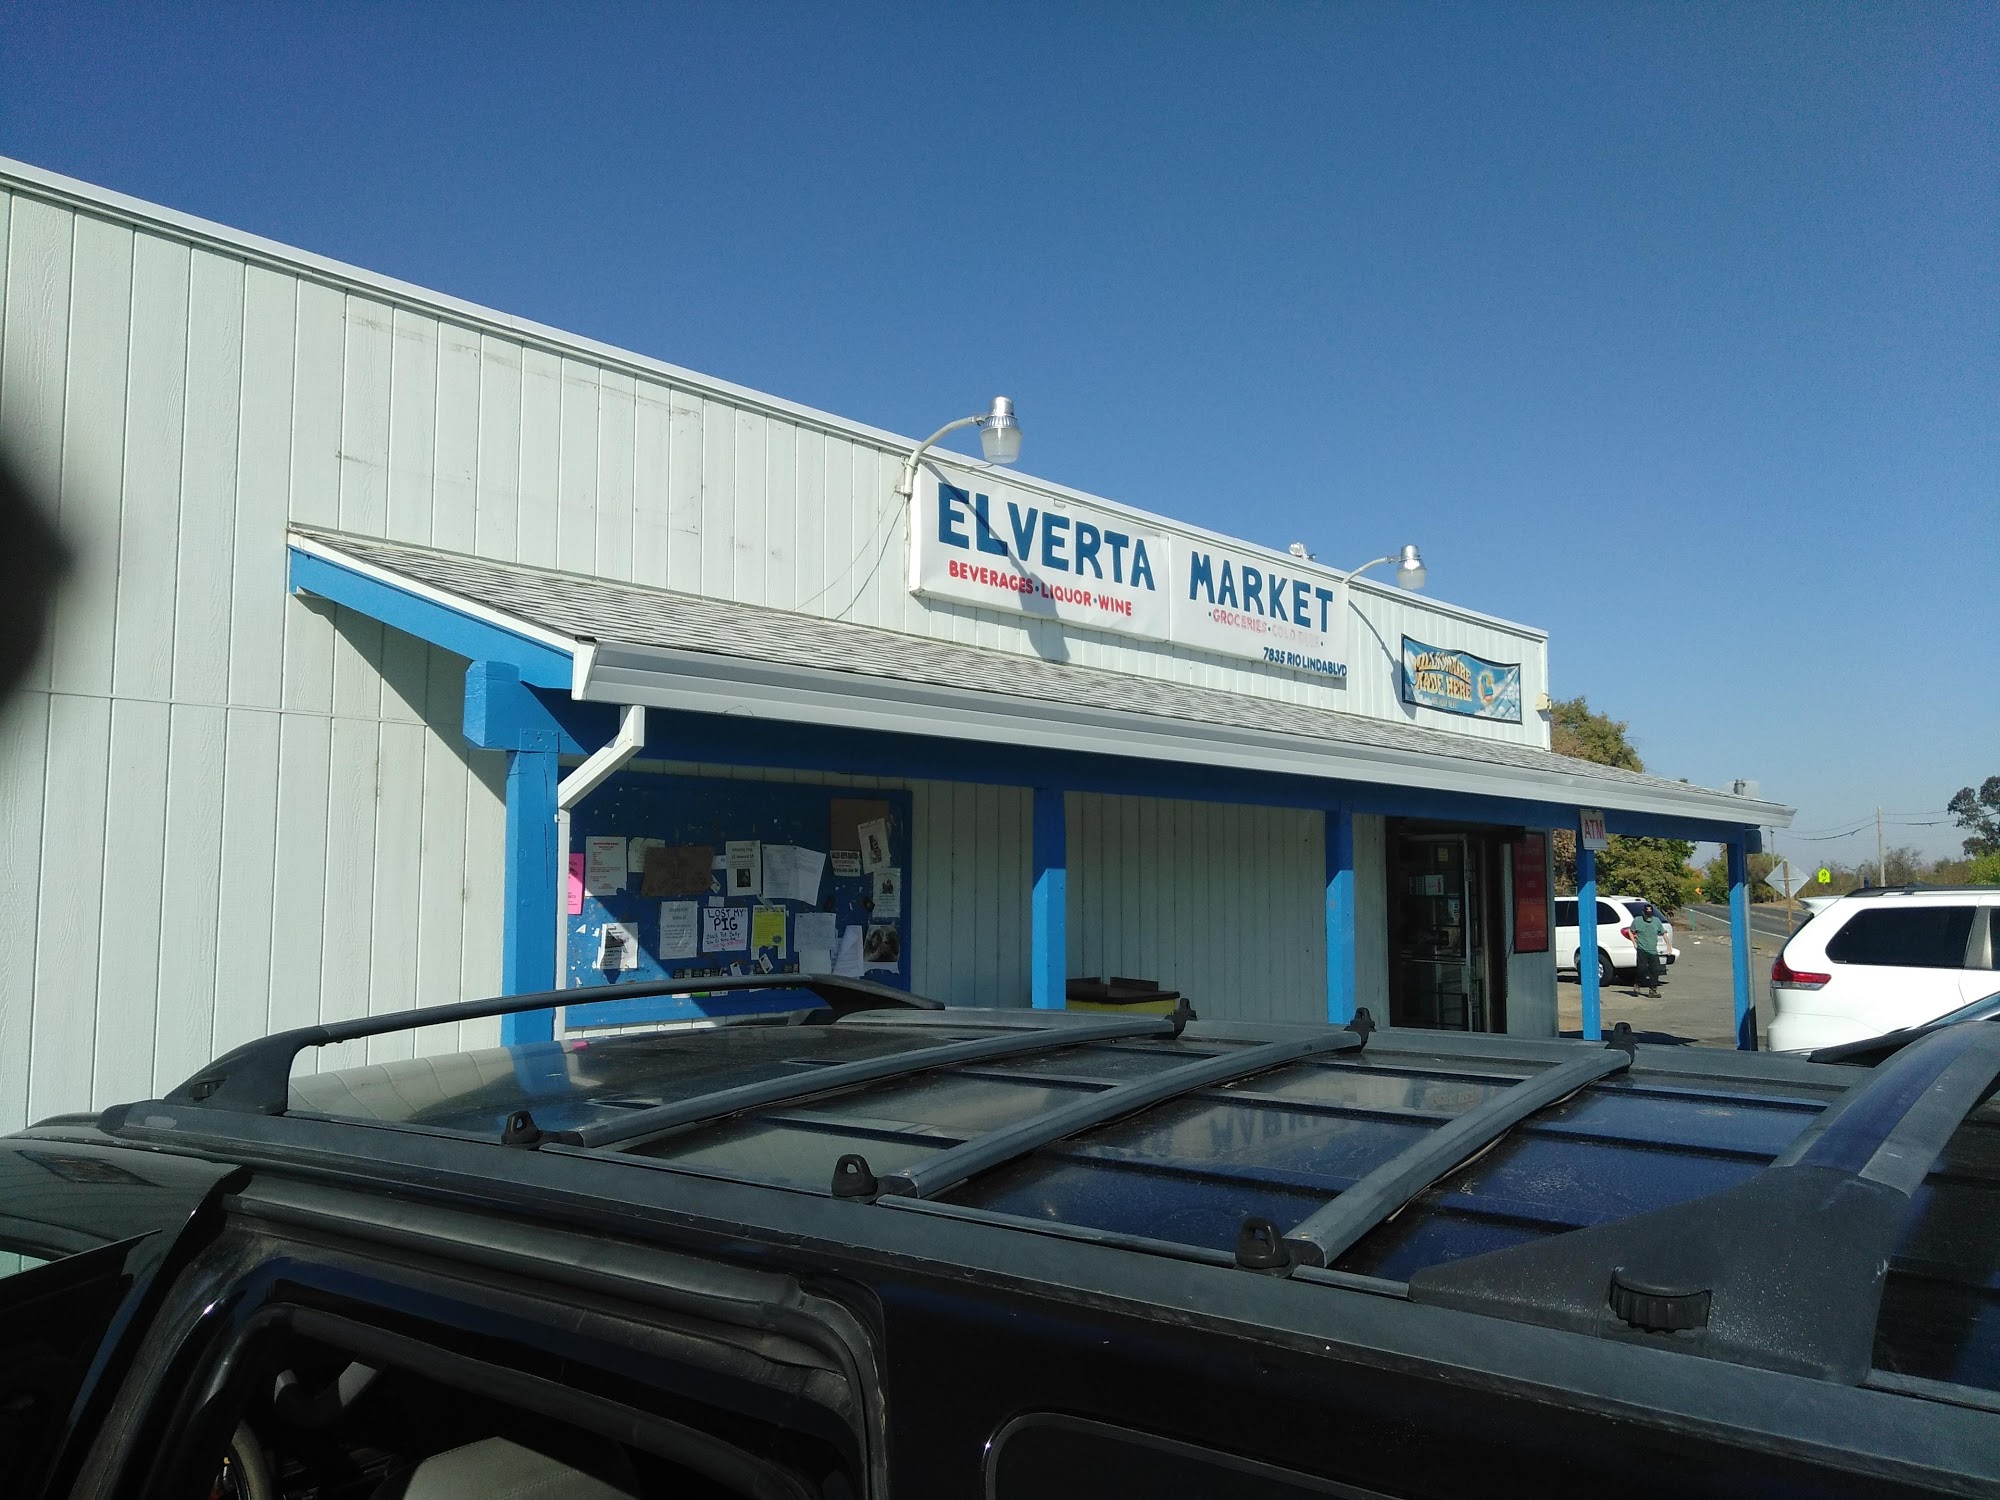 Elverta Market